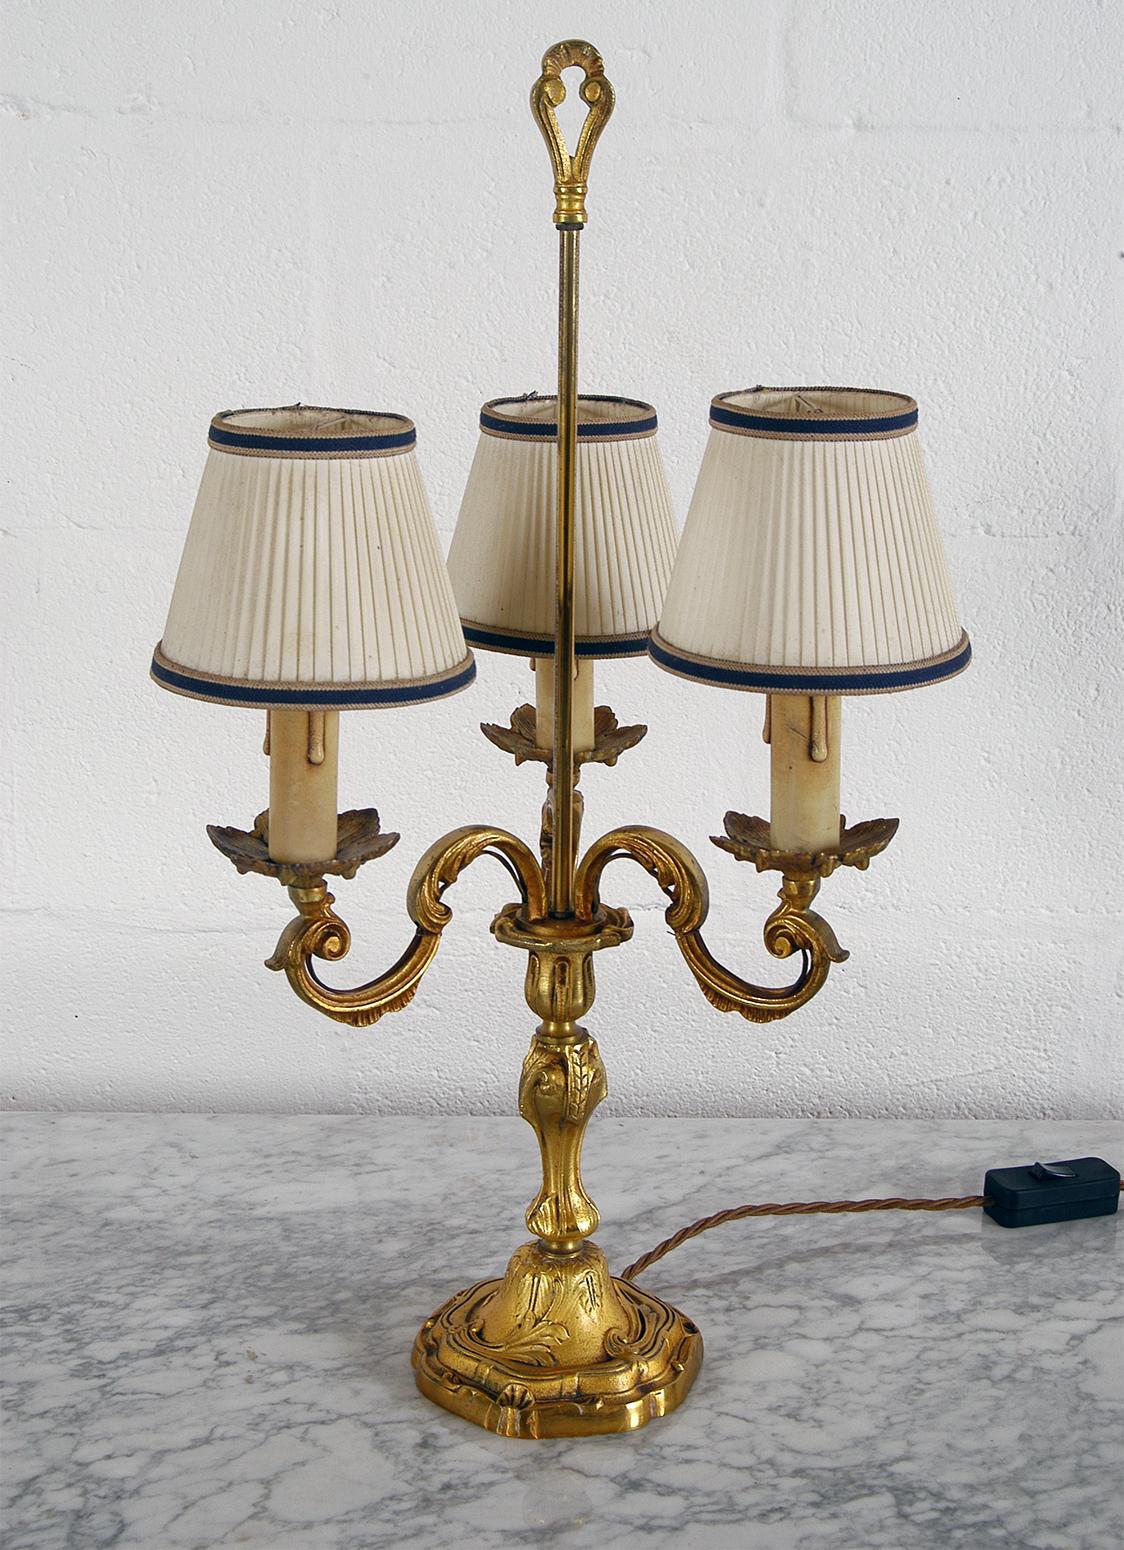 Une lampe de table à trois bras en laiton doré français du milieu du 20e siècle, qui conserve ses fausses bougies d'origine en carton comprimé et est équipée de trois abat-jour individuels.
La base en laiton lourd a une marque sur le dessous (L333